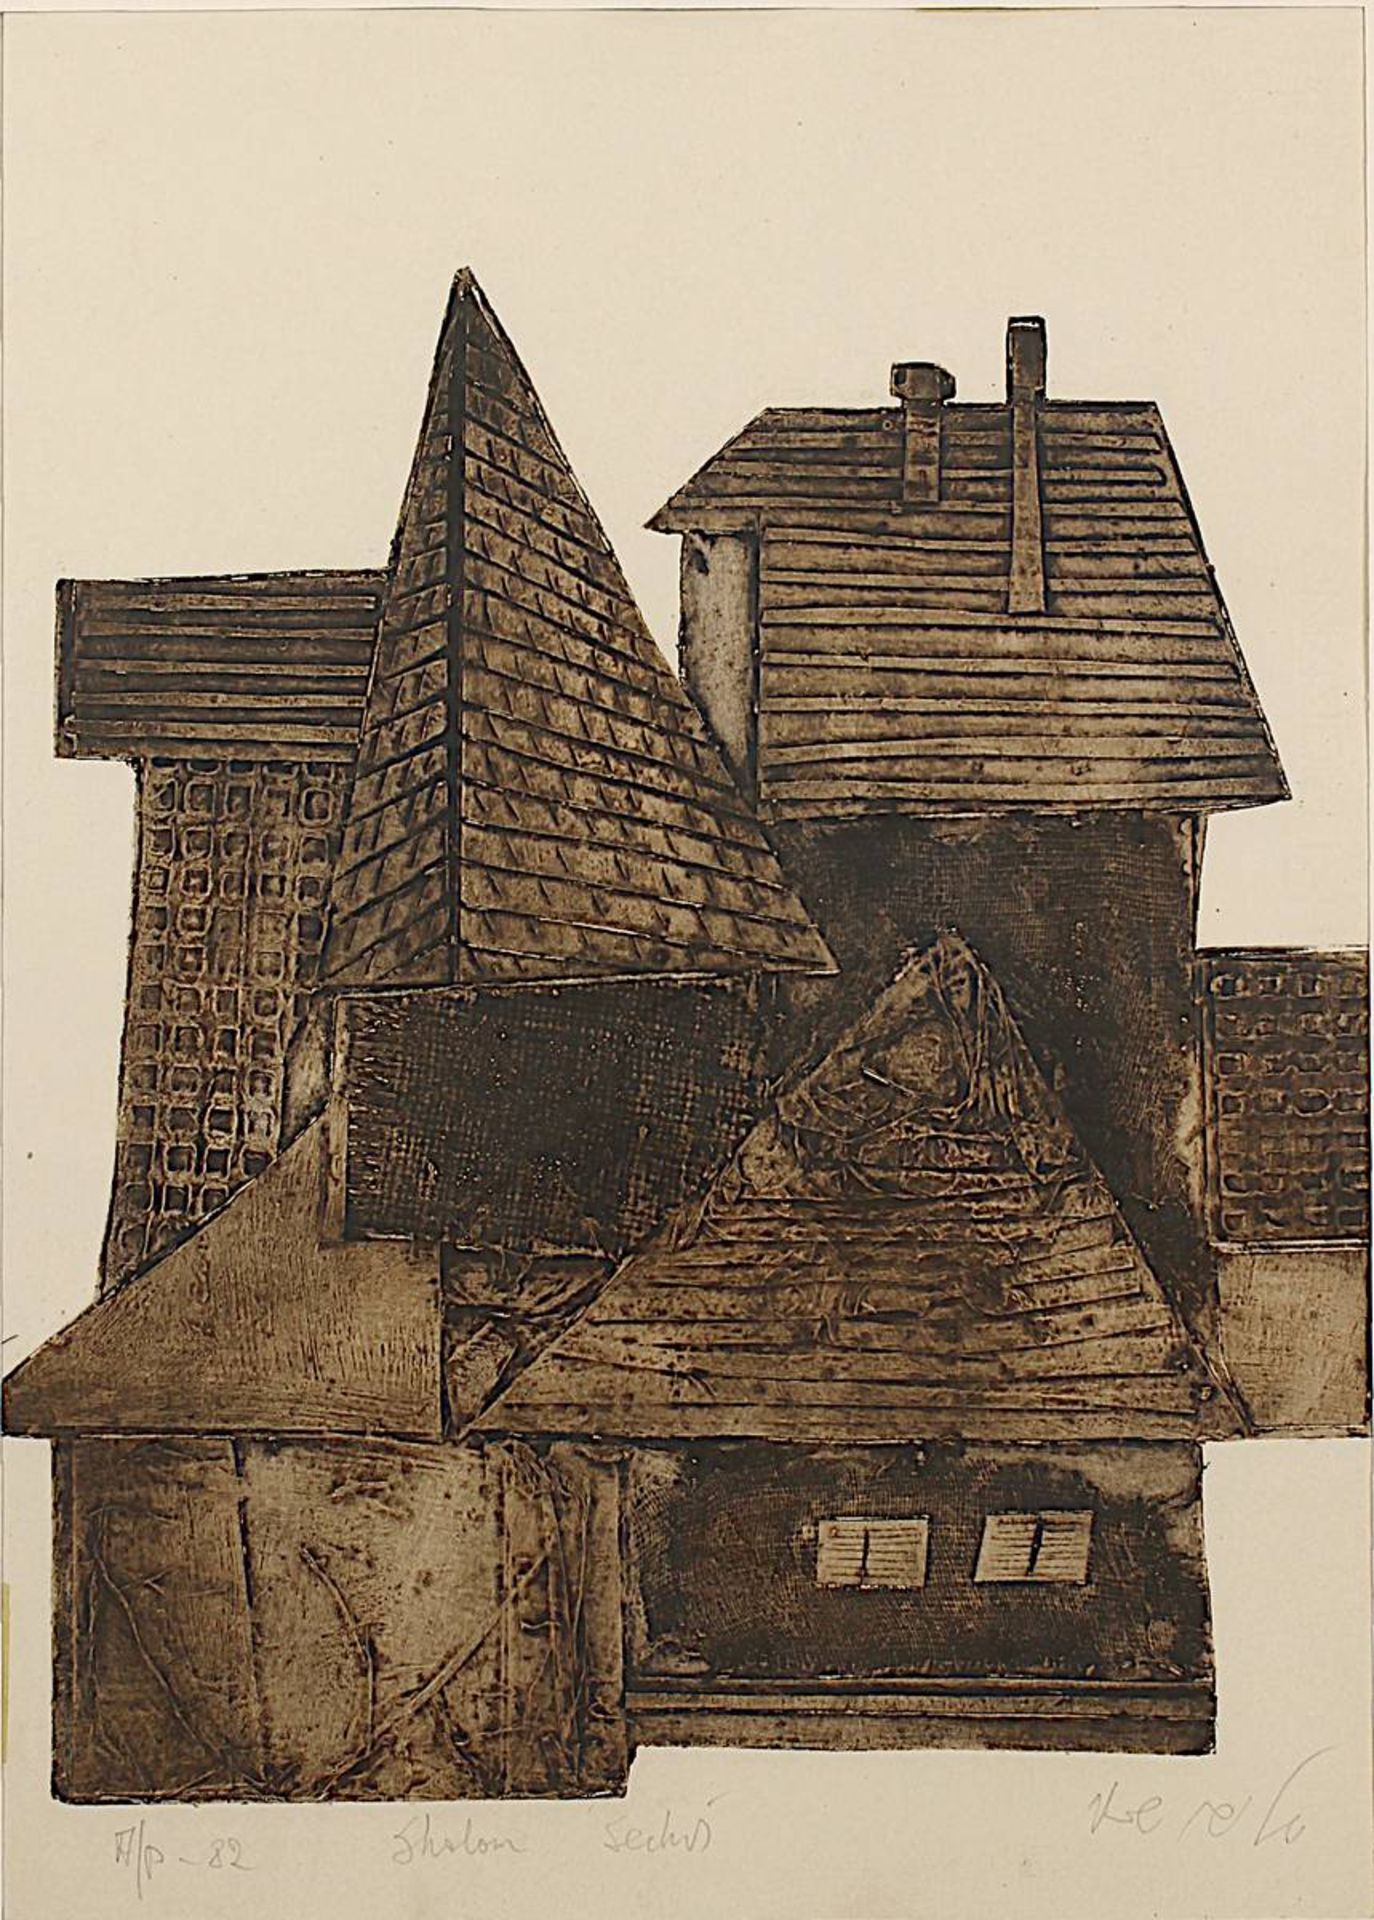 Sechvi, Shalom (Geburtsname Friedrich Kokotek, Sosnowiec 1928 - 2013 Rischon LeZion), Architektur- - Bild 2 aus 2